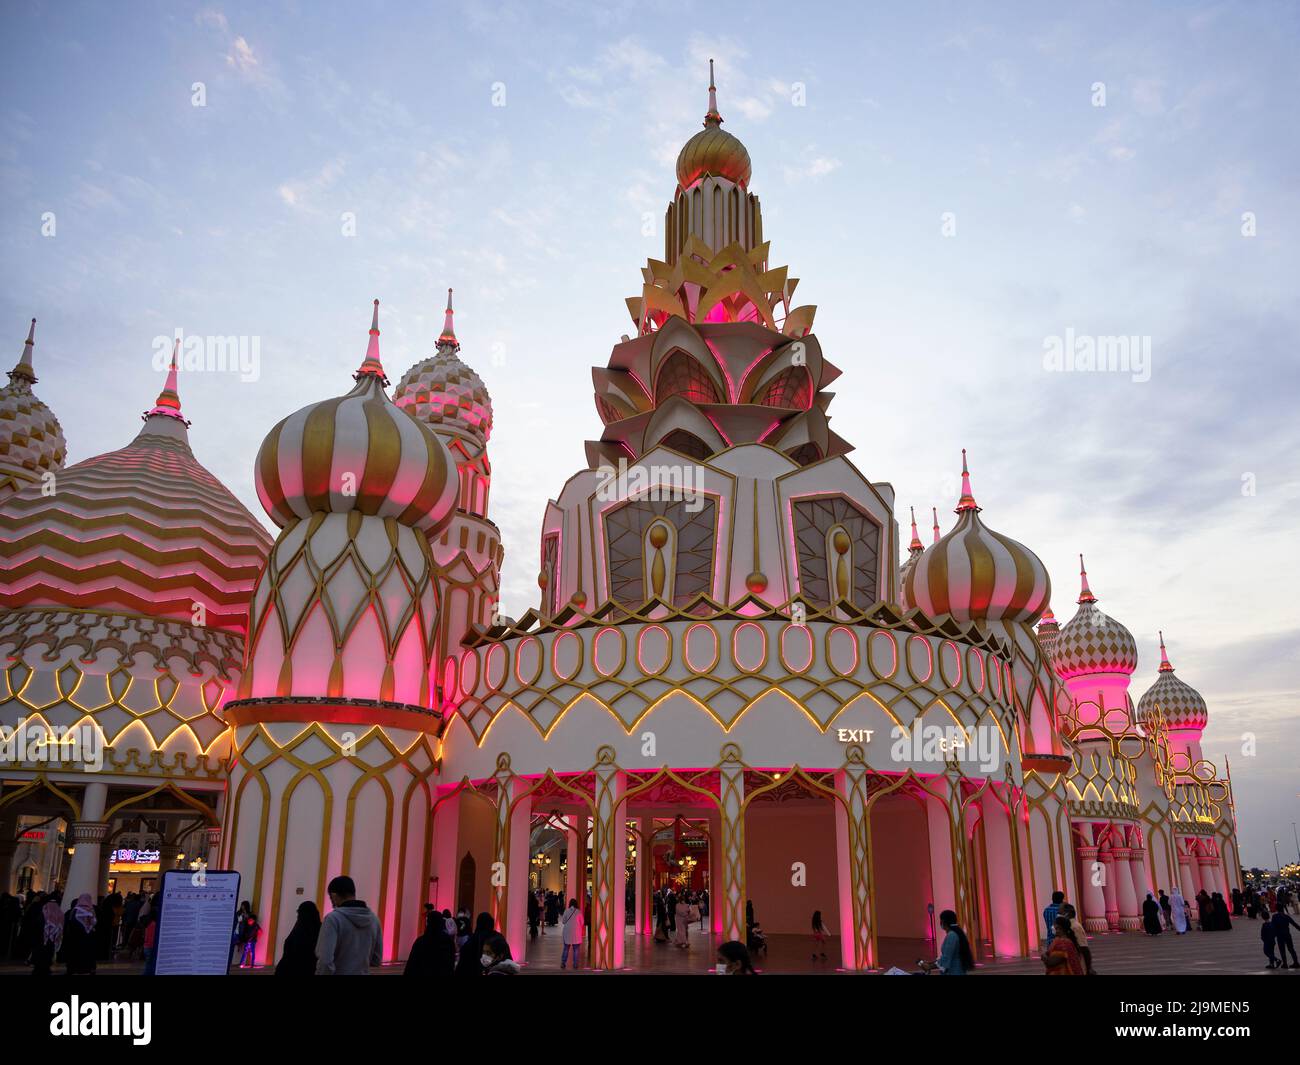 L'entrée principale sur le thème russe du village mondial est une attraction touristique populaire à Dubaï avec des pavillons de pays mondiaux, des boutiques et des restaurants. Banque D'Images